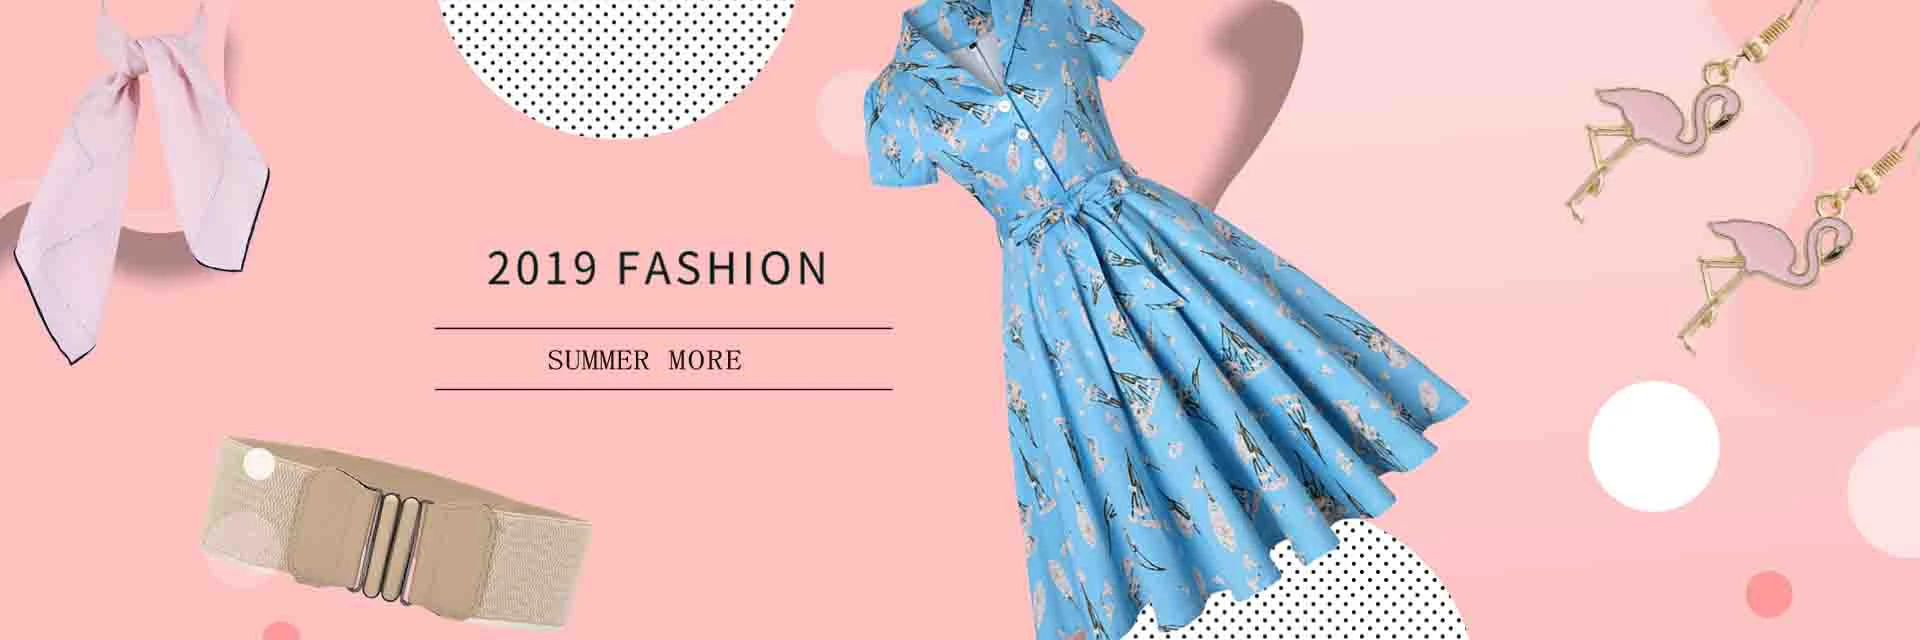 SISHION летнее Ретро женское платье с v-образным вырезом SP0108 Повседневные платья ярких цветов женские винтажные платья для вечеринок